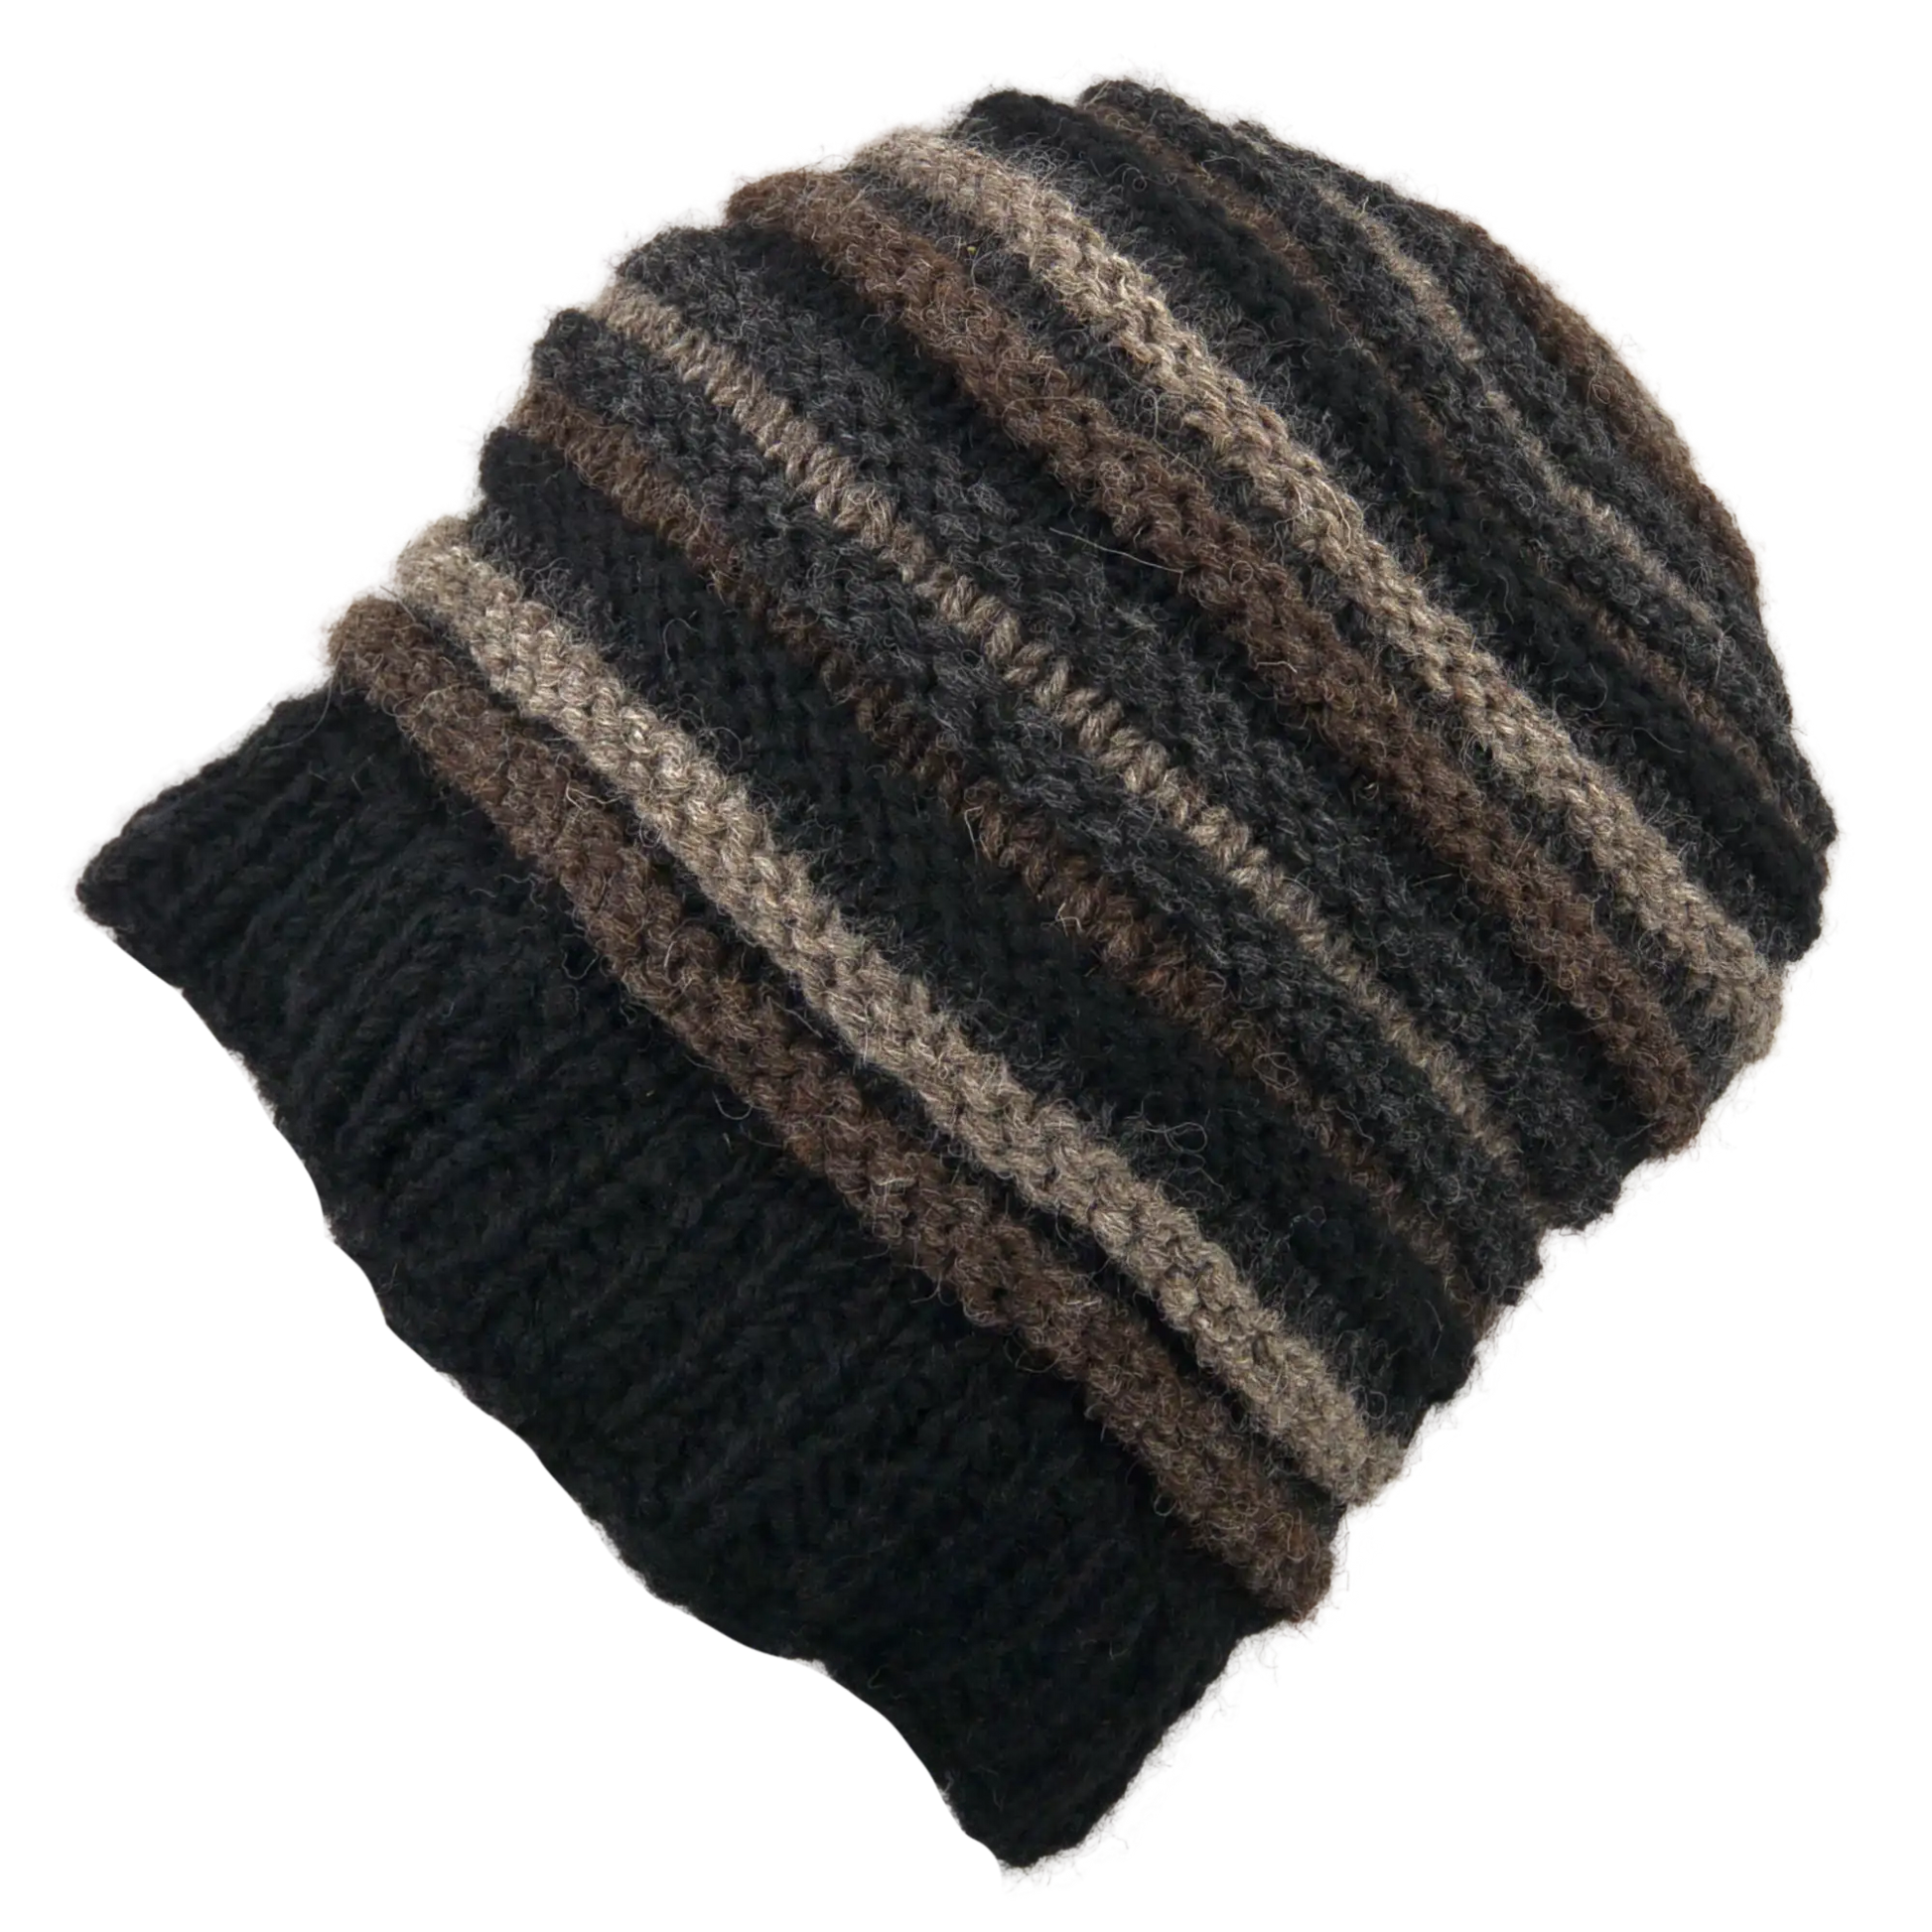 Rippenmütze, handgestrickte Wollmütze aus 100% Schurwolle mit farblich unterschiedlichem Rippenstrick. Schwarz, Grau, Braun.